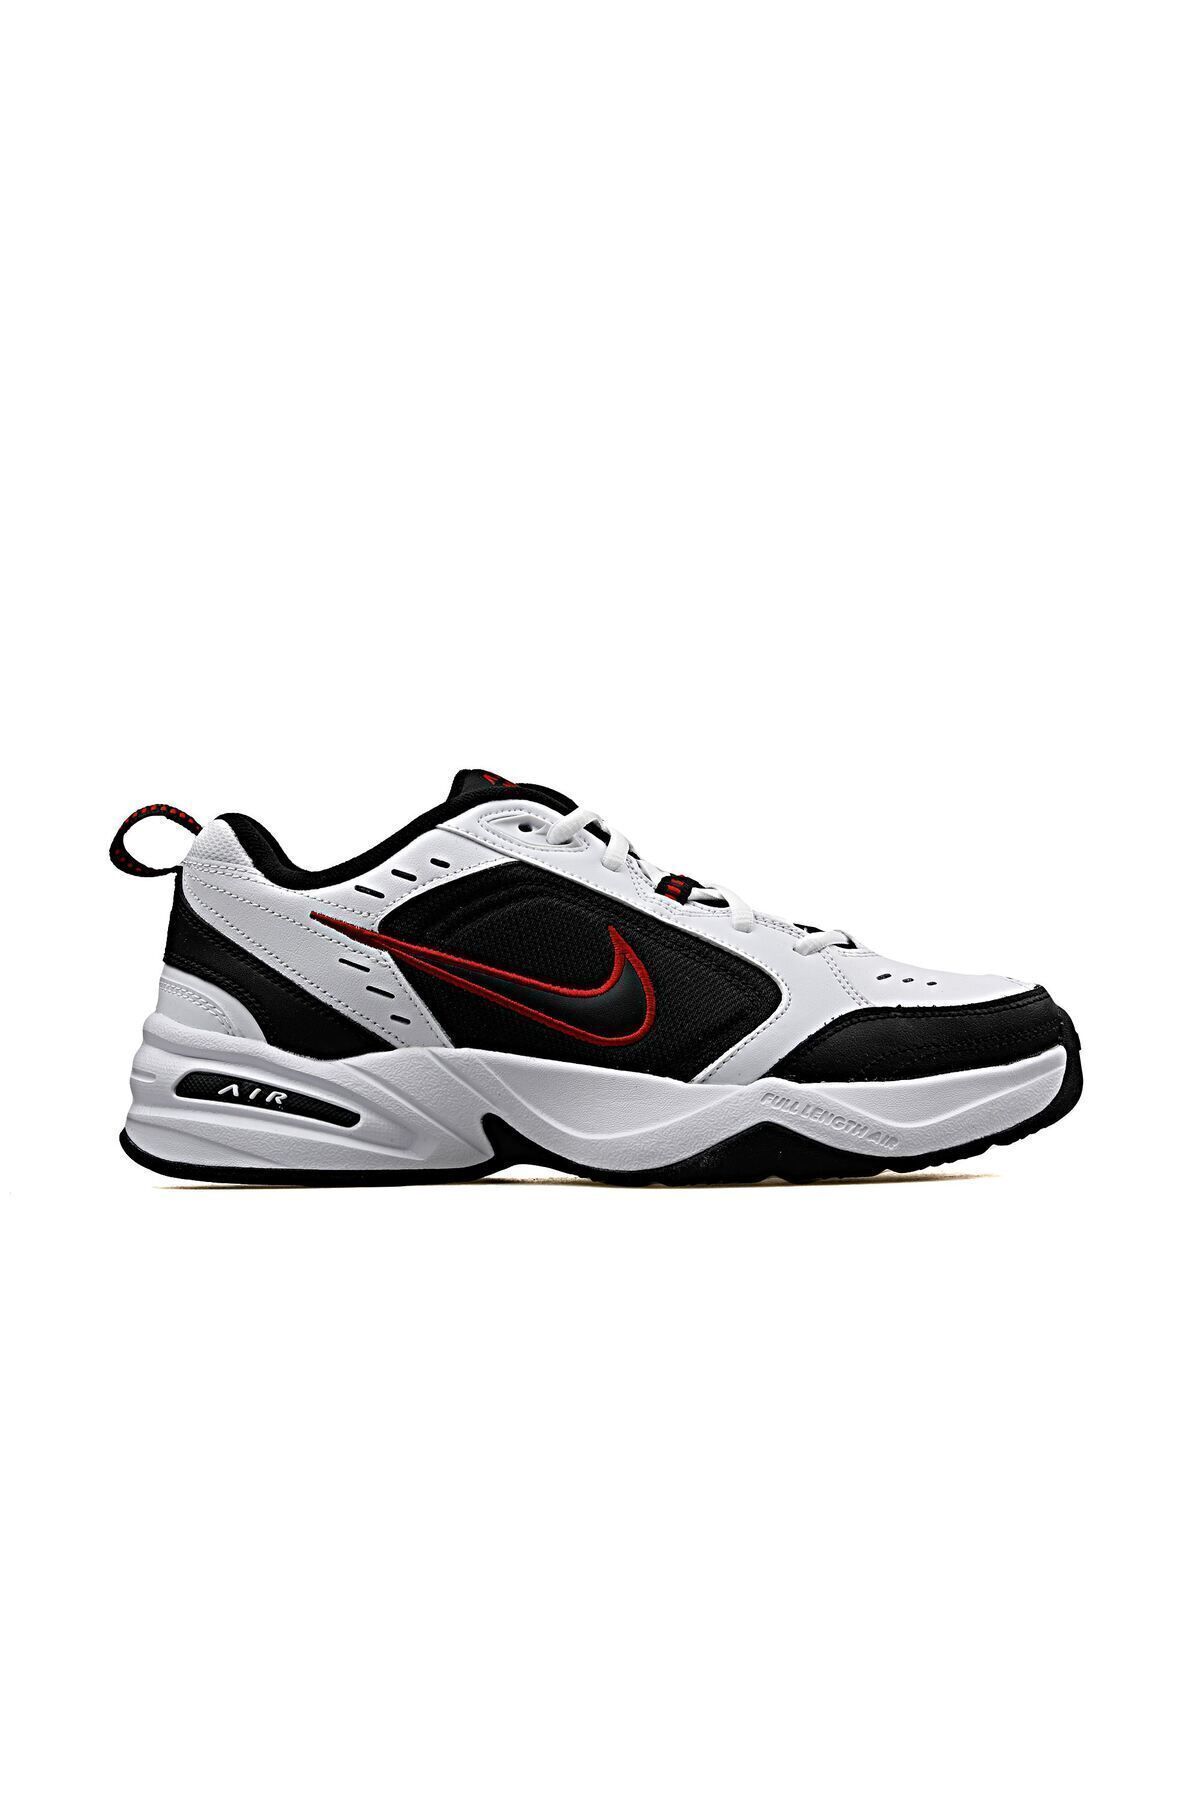 Nike 415445 101 Aır Monarch Iv Erkek Spor Ayakkabı